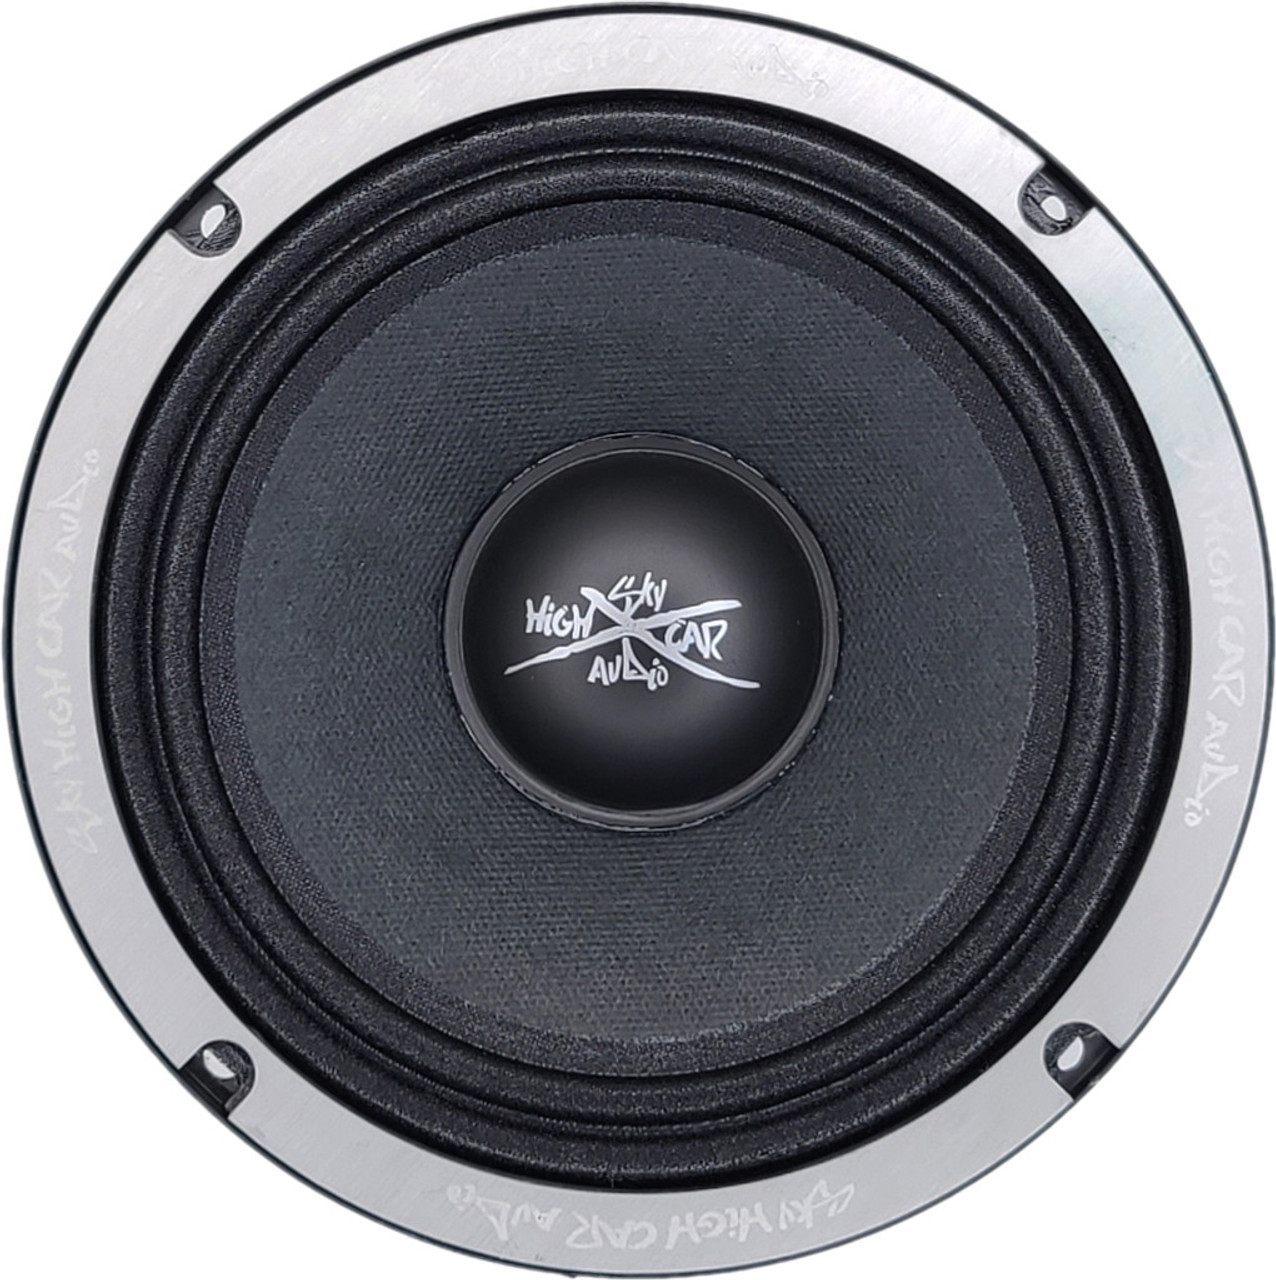 SHCA Pro Audio EL68 6.5